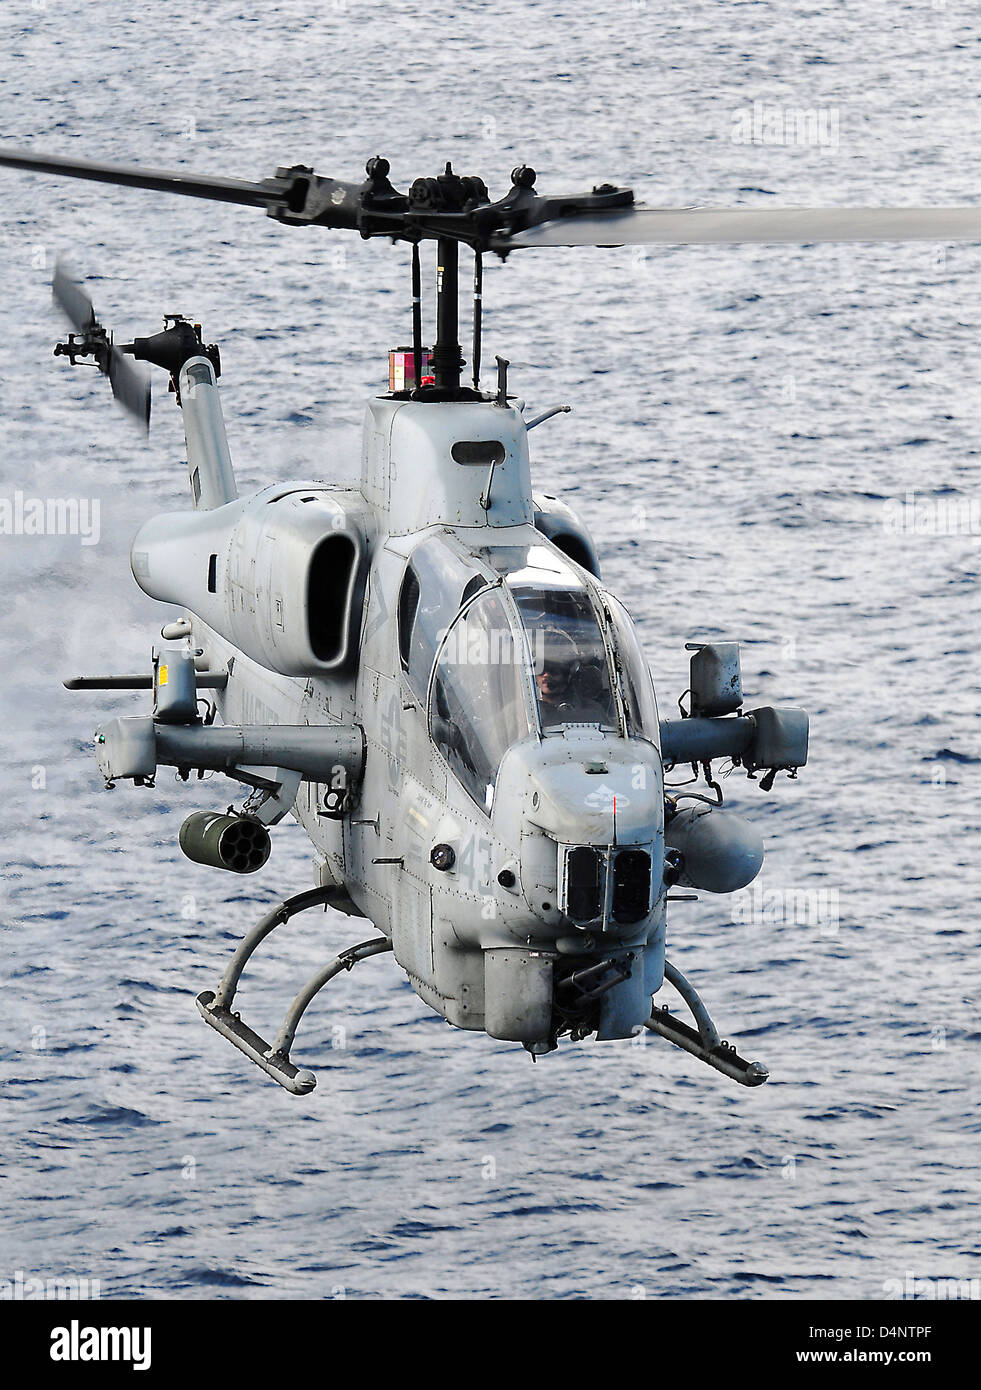 Un Marine AMÉRICAIN AH-1W Super Cobra hélicoptère de combat pendant les opérations de vol à bord du navire d'assaut amphibie USS PELELIU, 17 juin 2010 dans la mer Adriatique. Banque D'Images